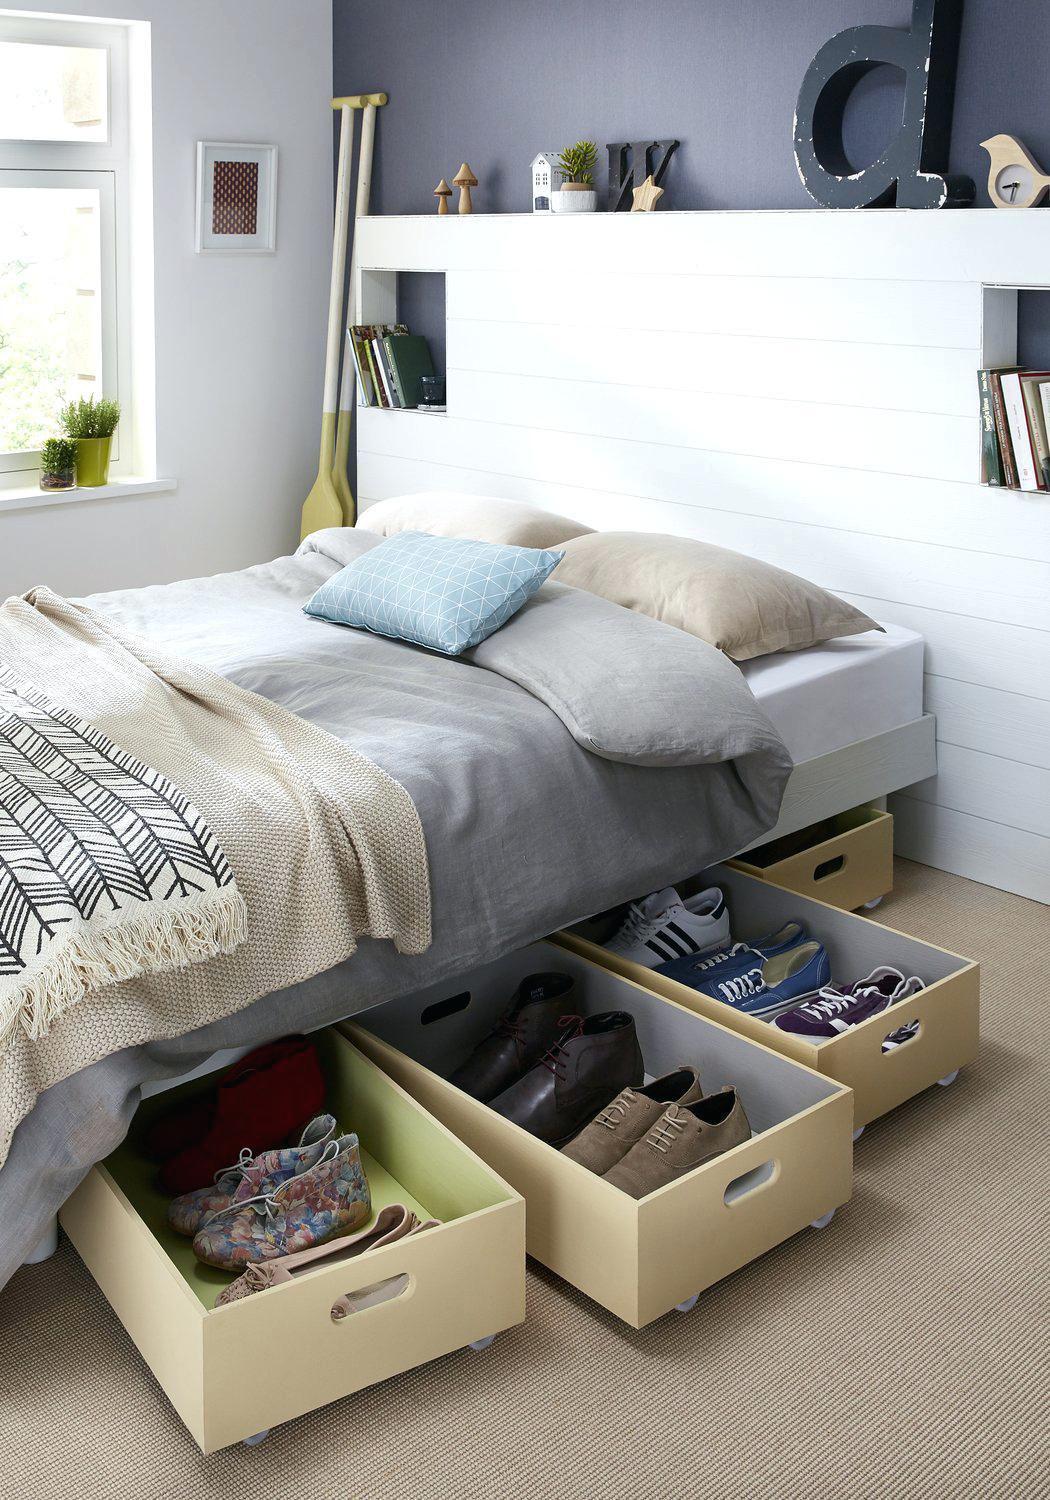 Small Bedroom Organization Ideas